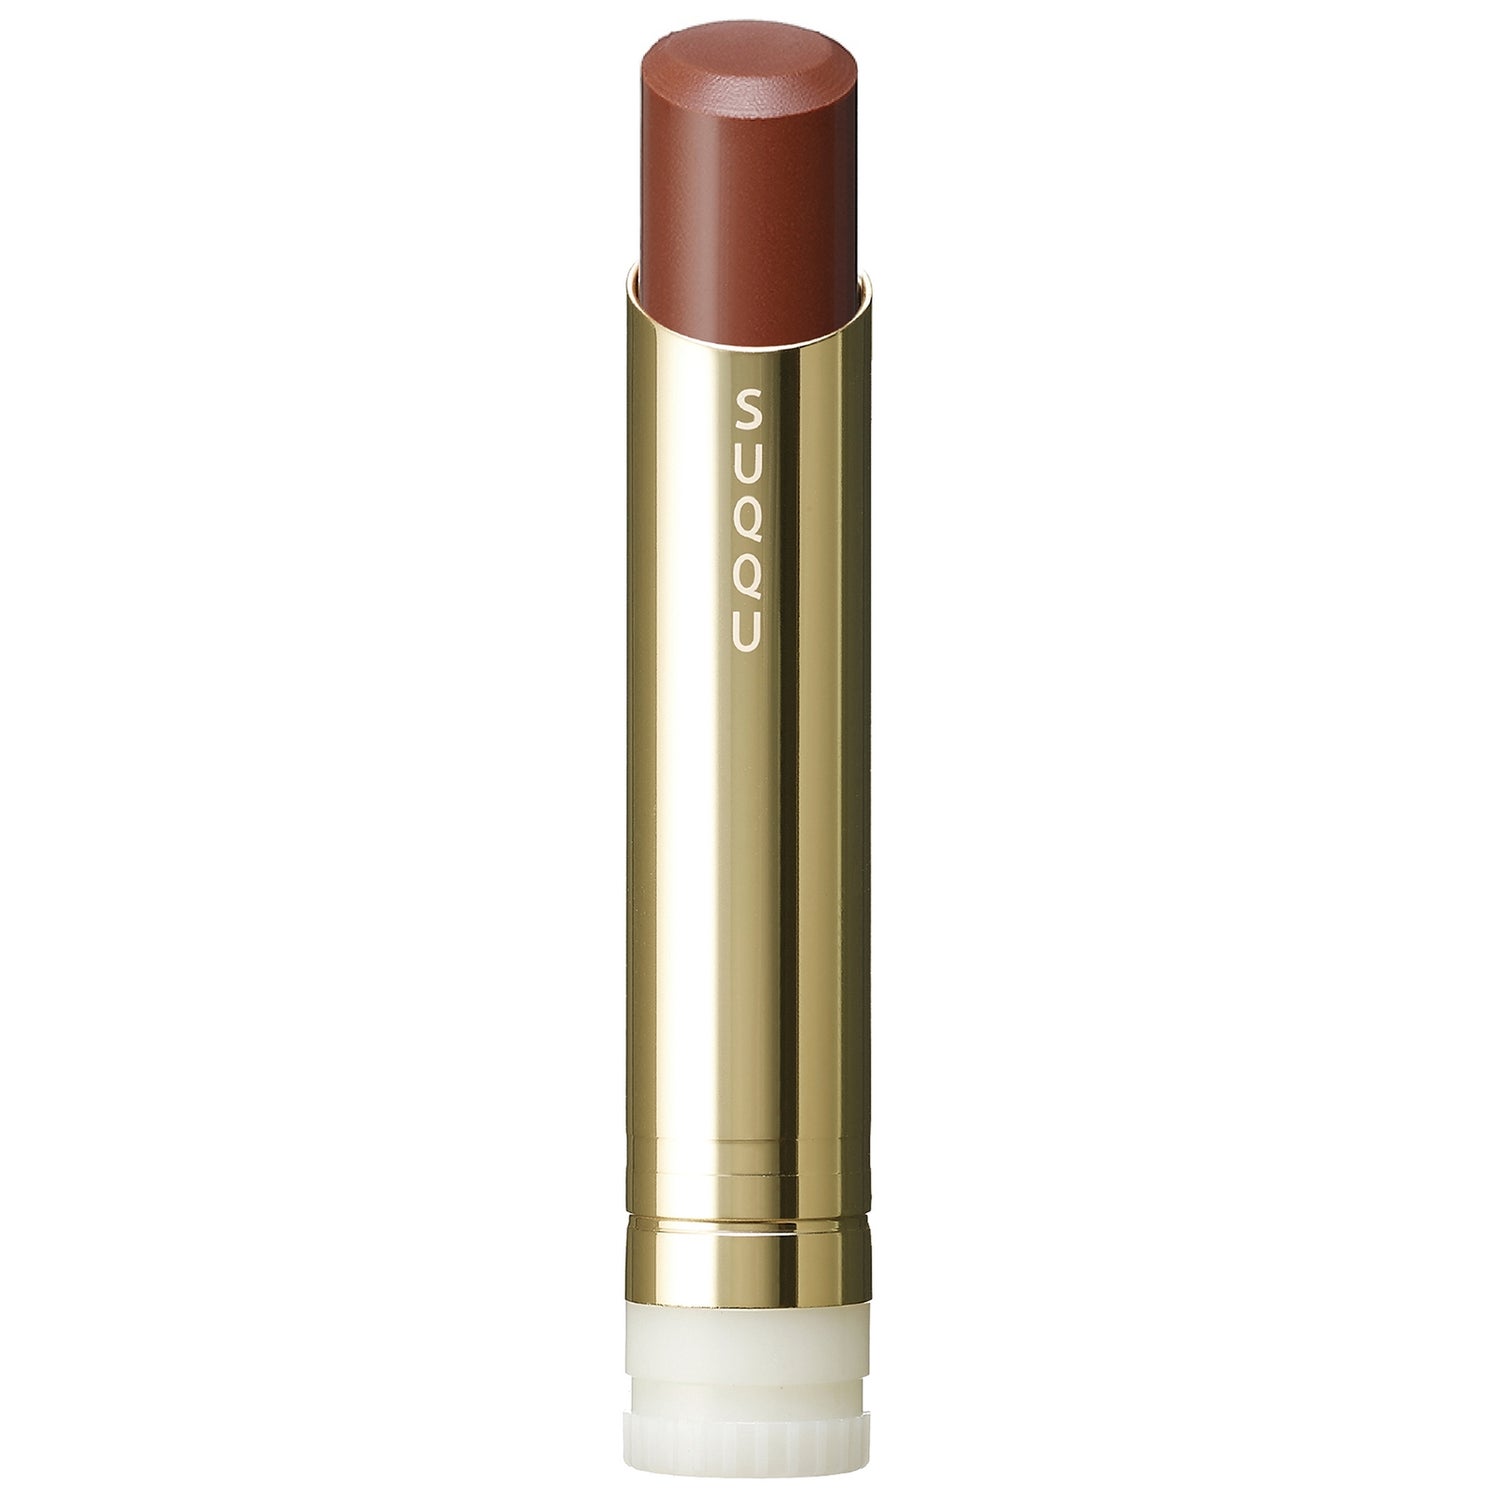 SUQQU Moisture Glaze Lipstick Refill 3.7g (Various Shades)